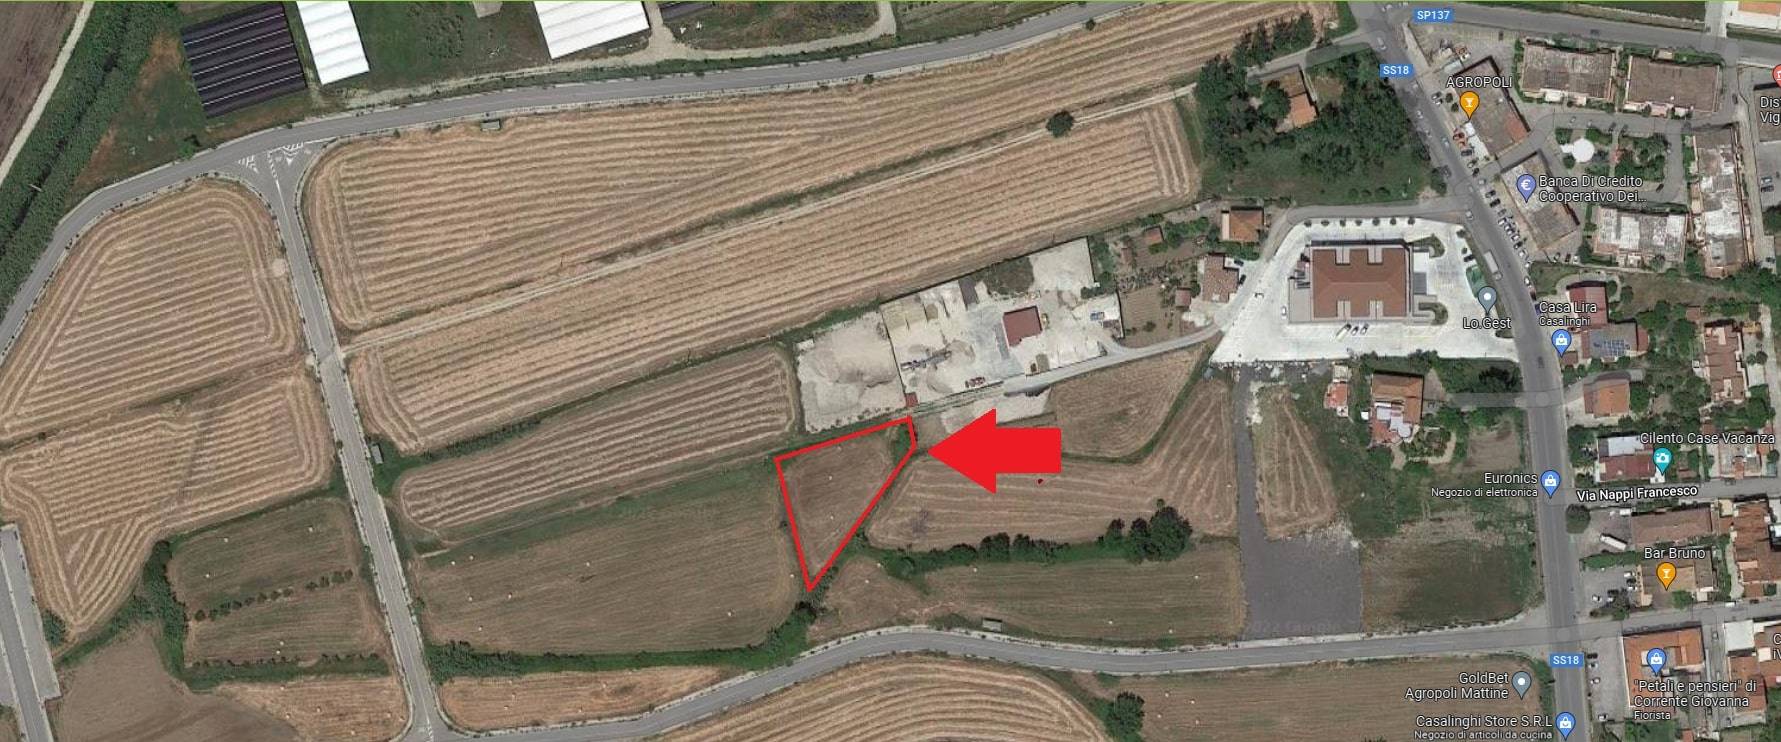 Terreno Edificabile Comm.le/Ind.le in vendita a Agropoli, 9999 locali, prezzo € 110.000 | CambioCasa.it